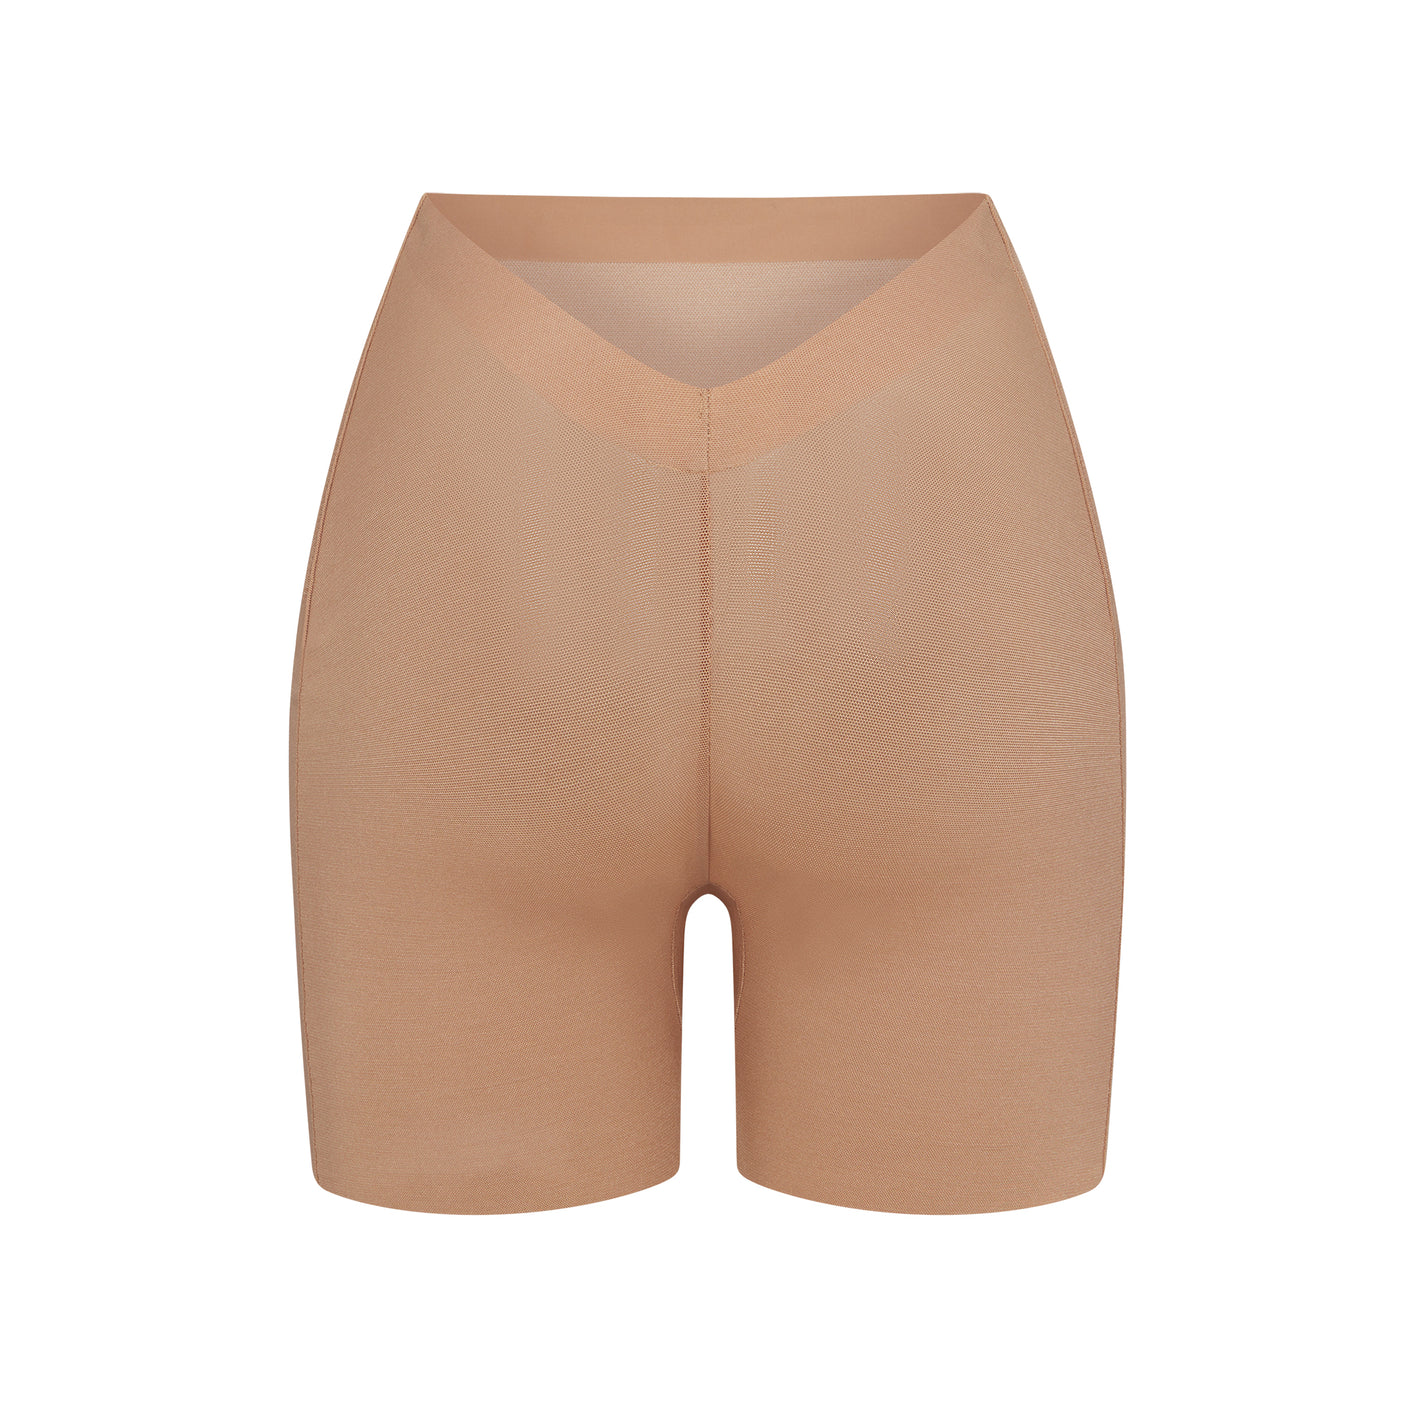 SKIMS Low Back Smoothing Shorts - ShopStyle Lingerie